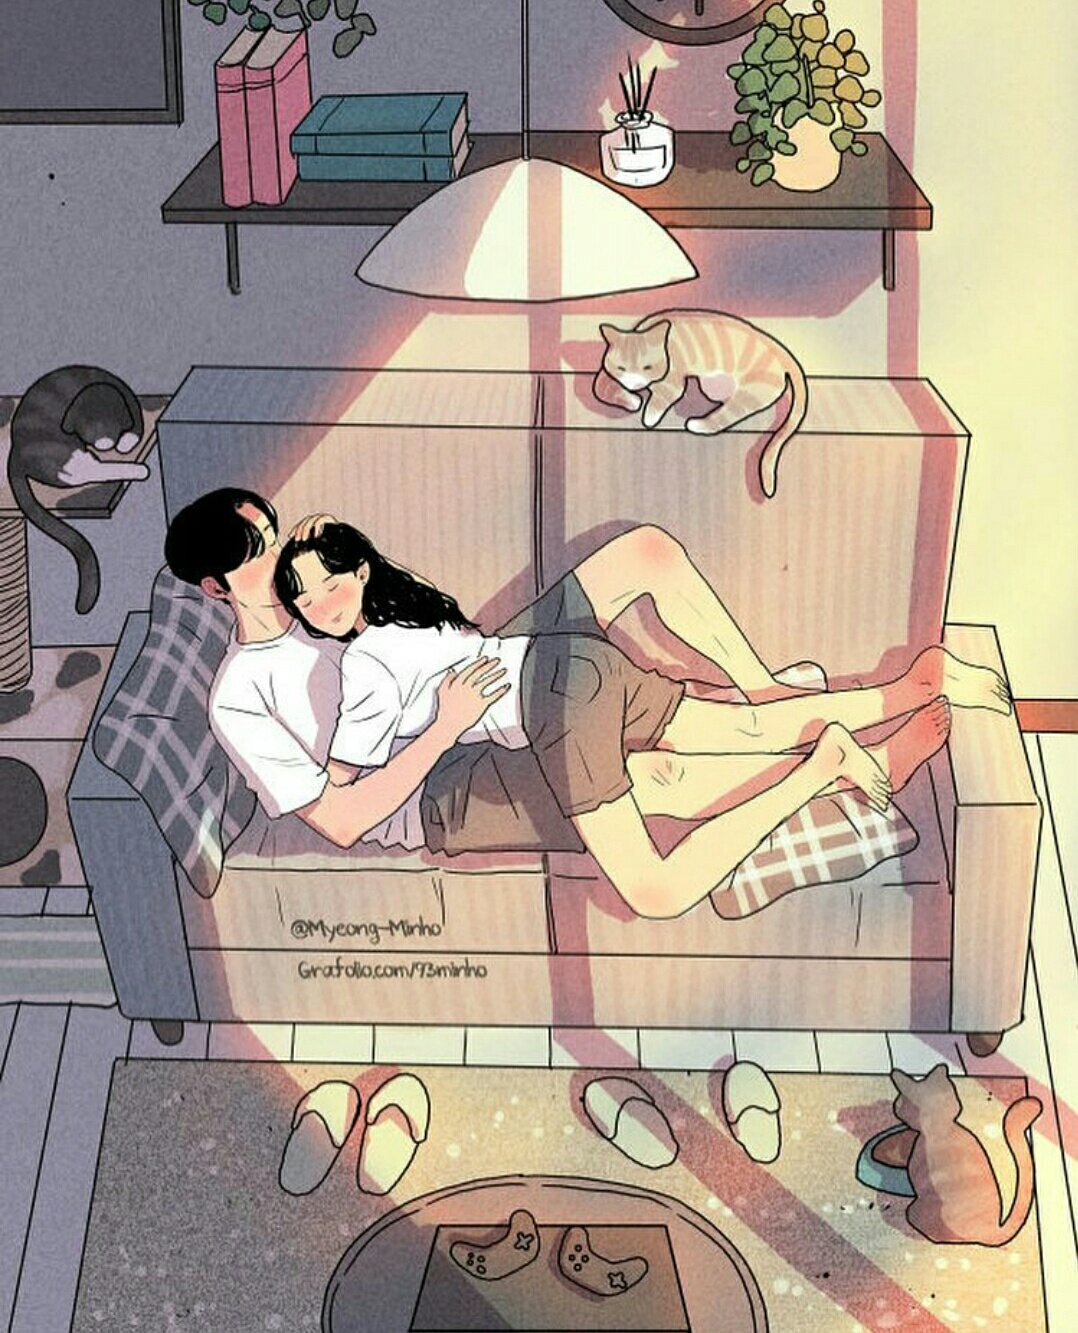 Снится жить вместе. Художника Myeong-Minho. Арт рисунок девушка и парень. Арты парочки на диване. Жить вместе арт.